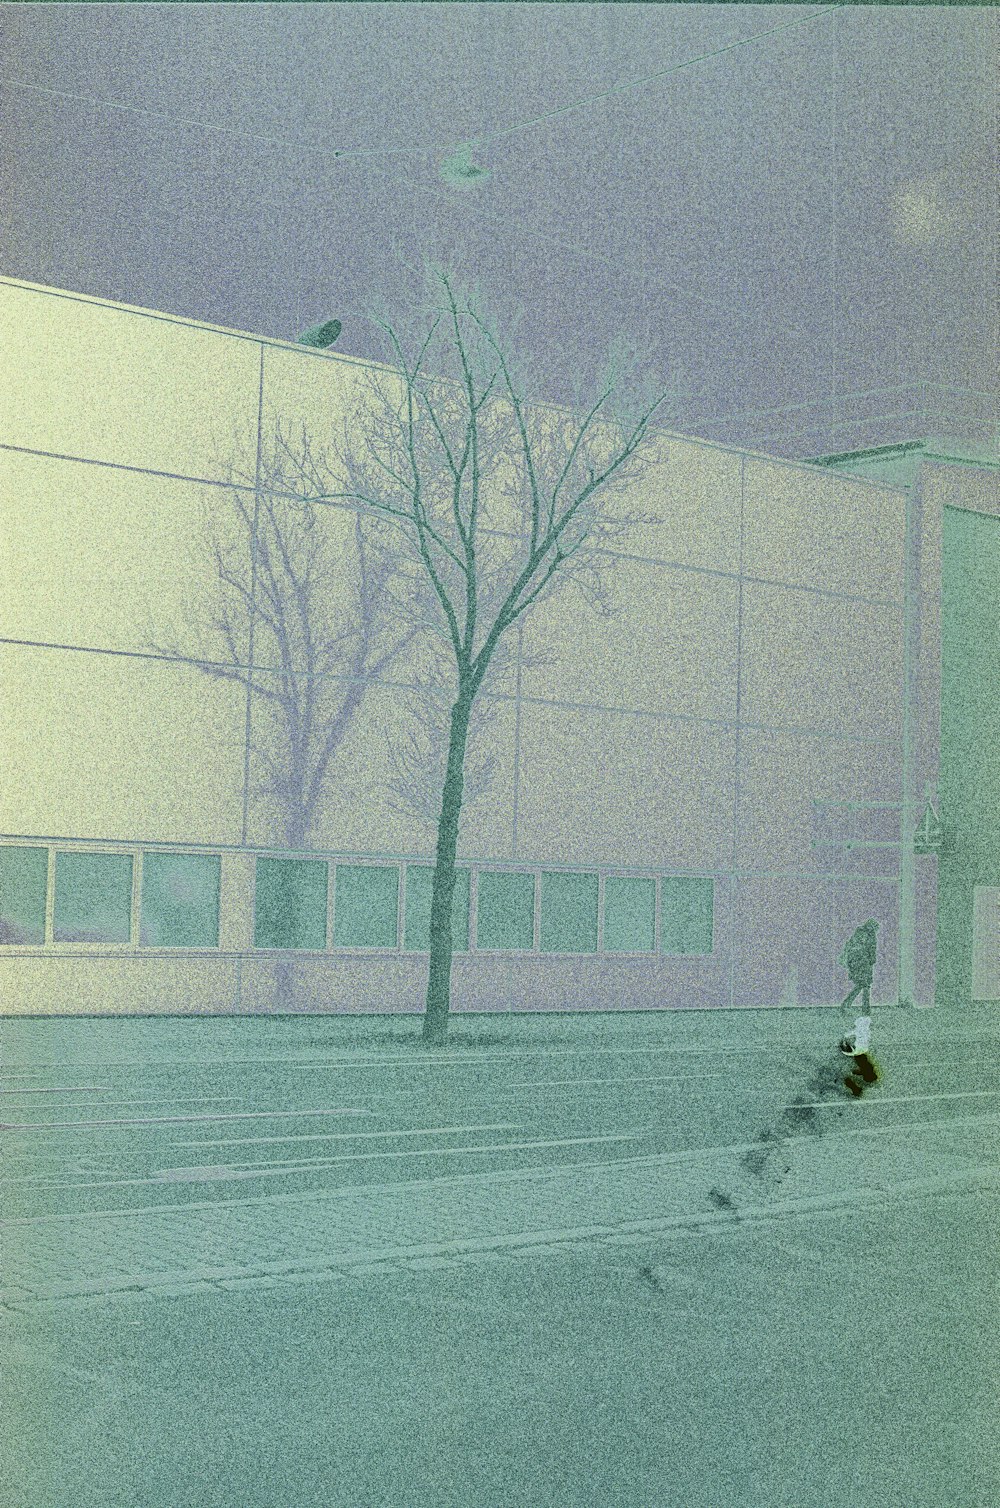 Una persona montando una patineta en una calle de la ciudad